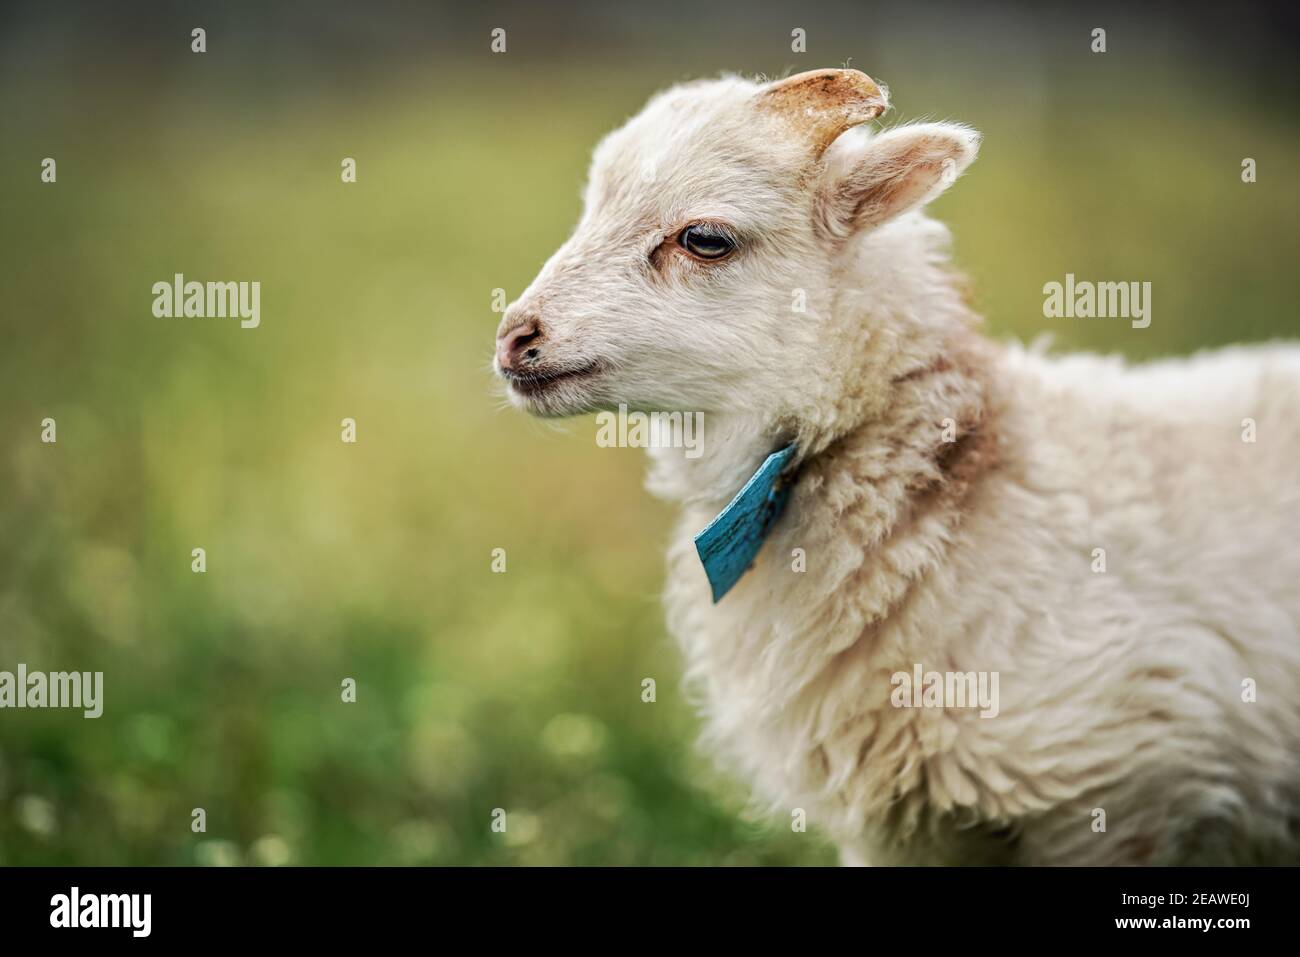 Jeune mouton ouessant ou agneau avec étiquette bleue autour du cou, paître sur la prairie verte de printemps, détail de gros plan Banque D'Images